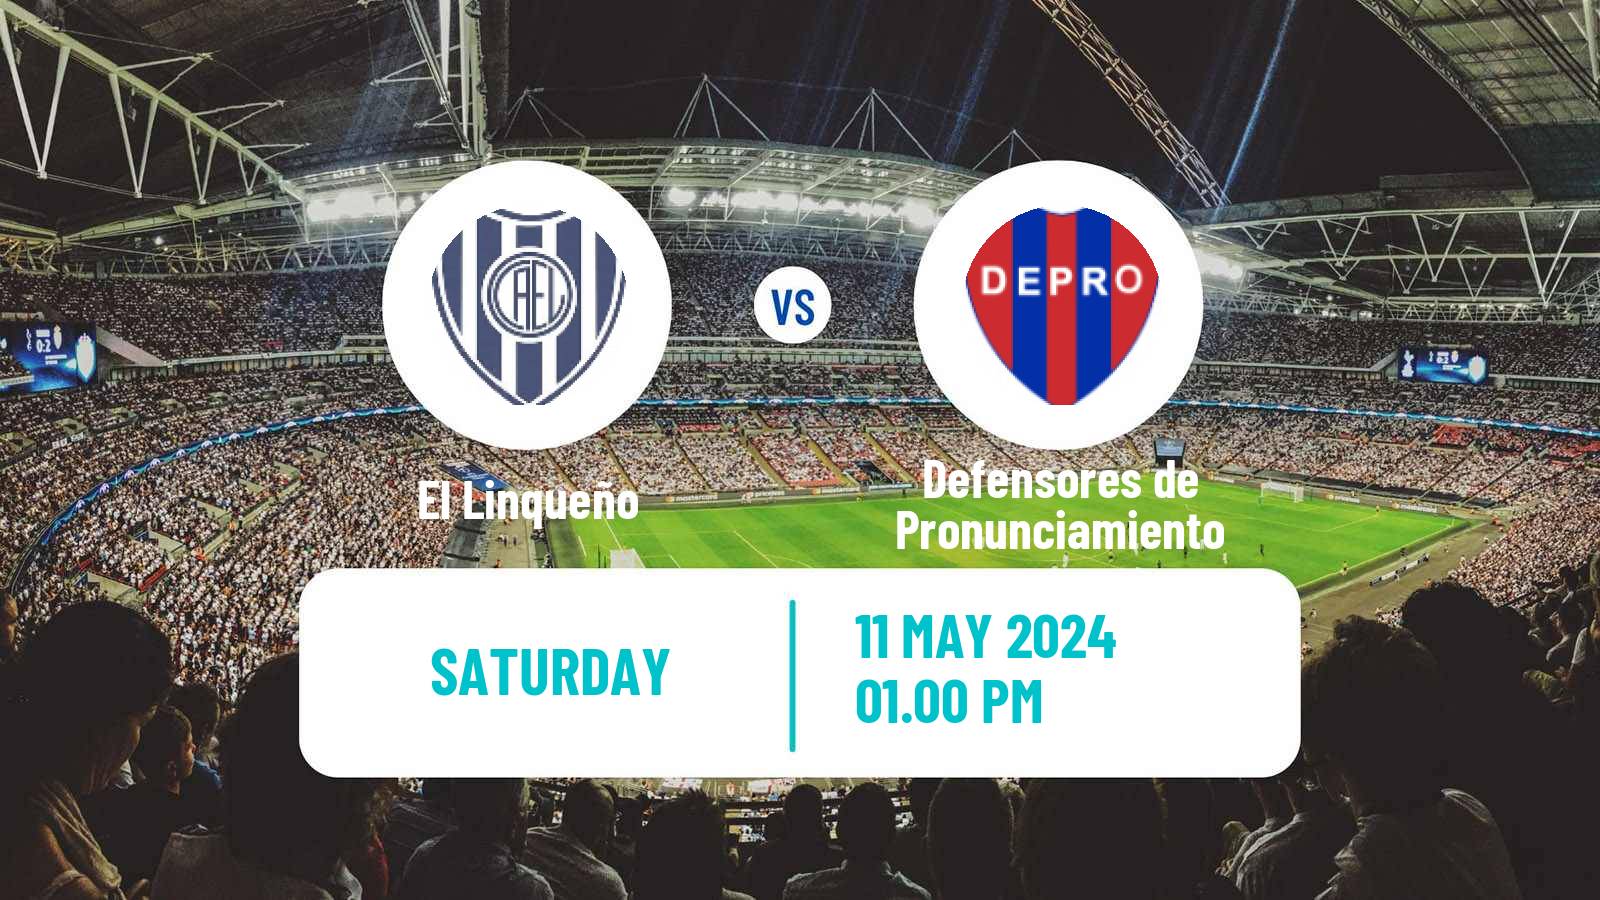 Soccer Argentinian Torneo Federal El Linqueño - Defensores de Pronunciamiento